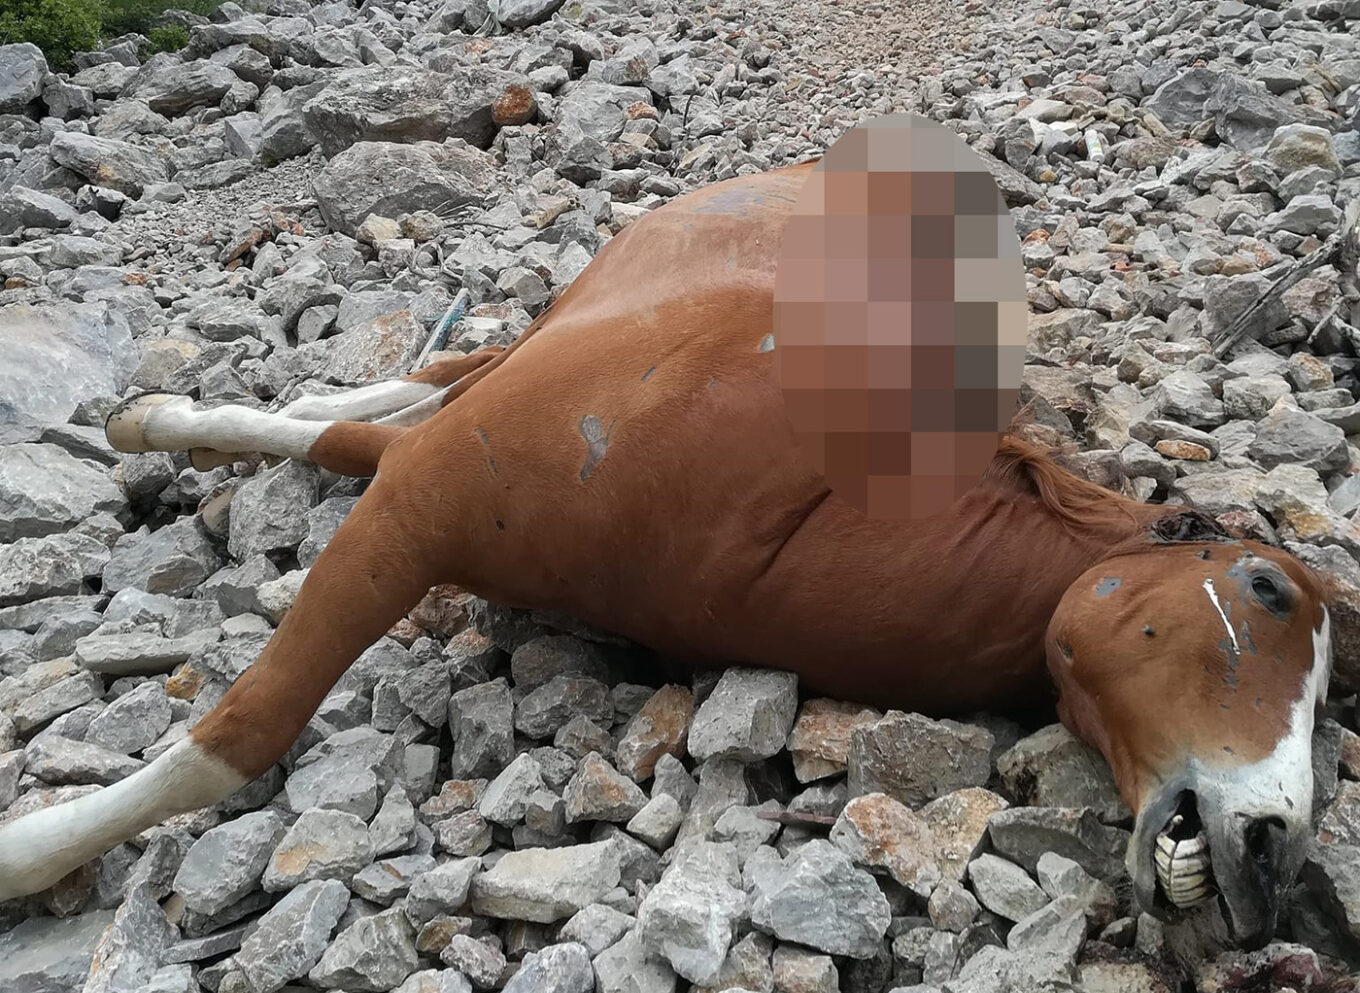 Φρίκη με νεκρά άλογα στη Δυτική Πάρνηθα - Τα πέταξαν ζωντανά στον γκρεμό;